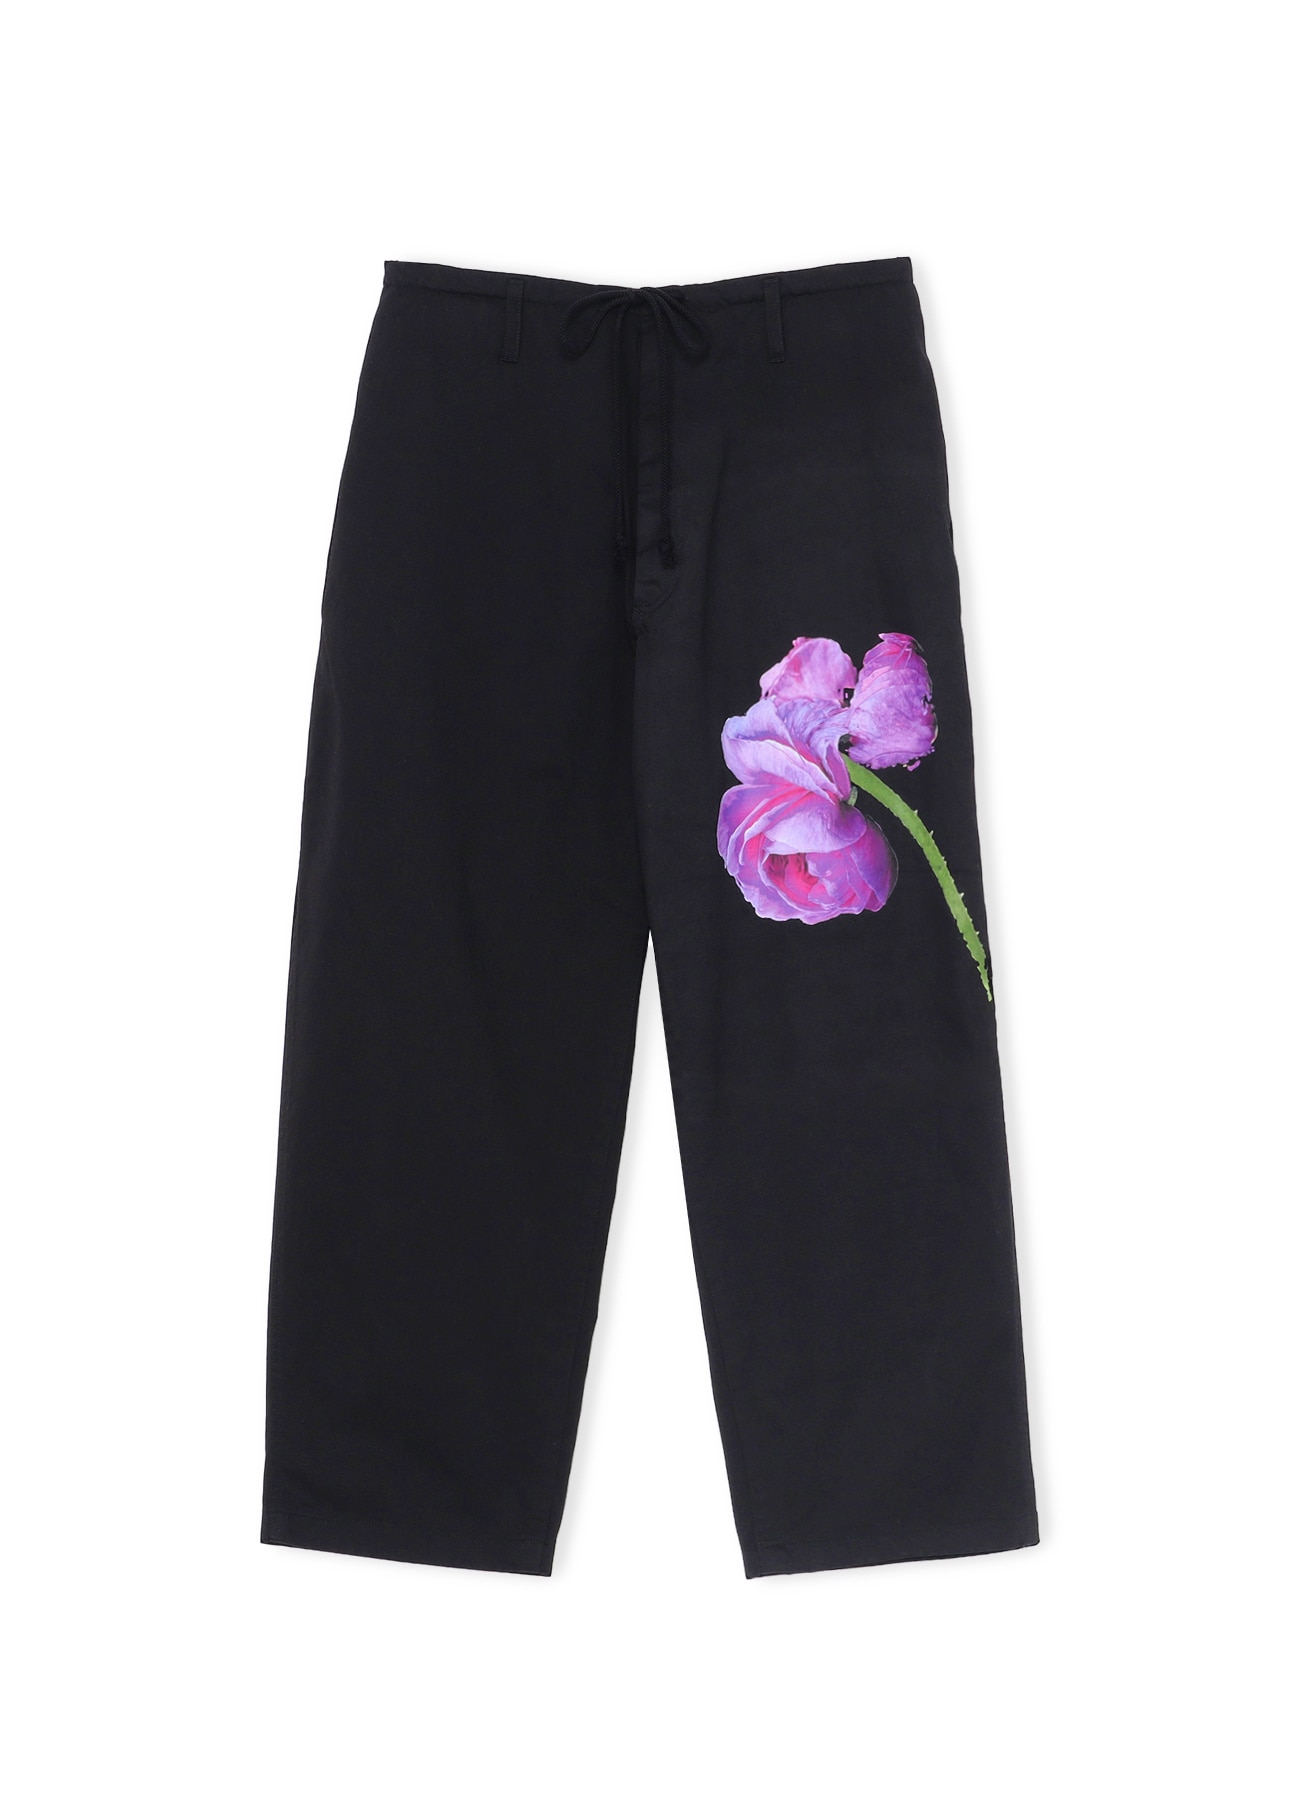 Cotton Chino PURPLE ROSE Pants(M BLACK): YOHJI YAMAMOTO｜WILDSIDE YOHJI ...